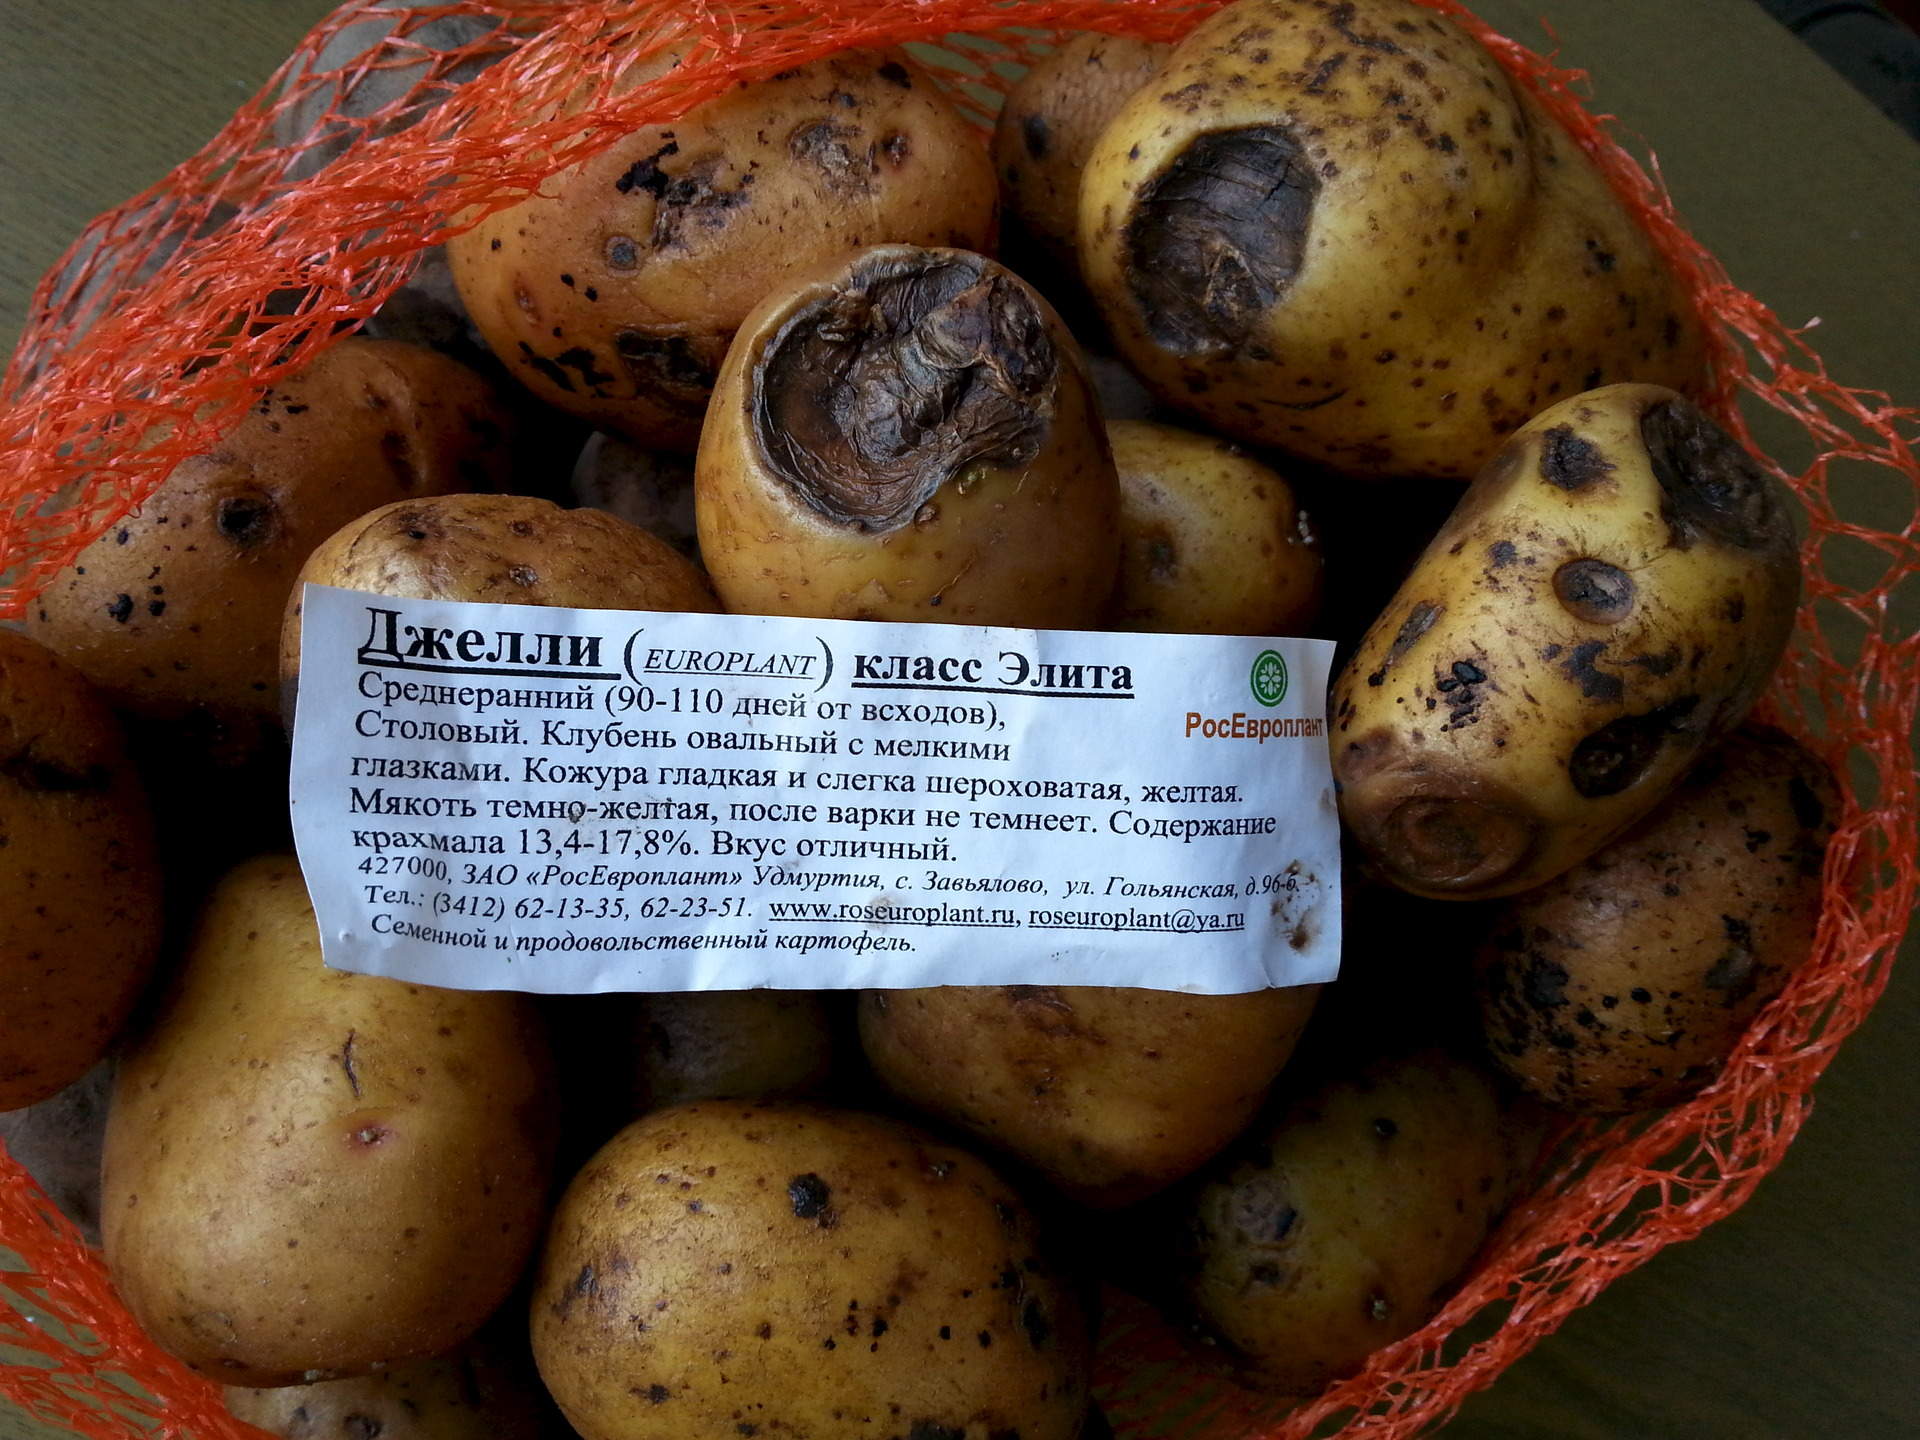 Картофель вега описание сорта характеристика урожайность